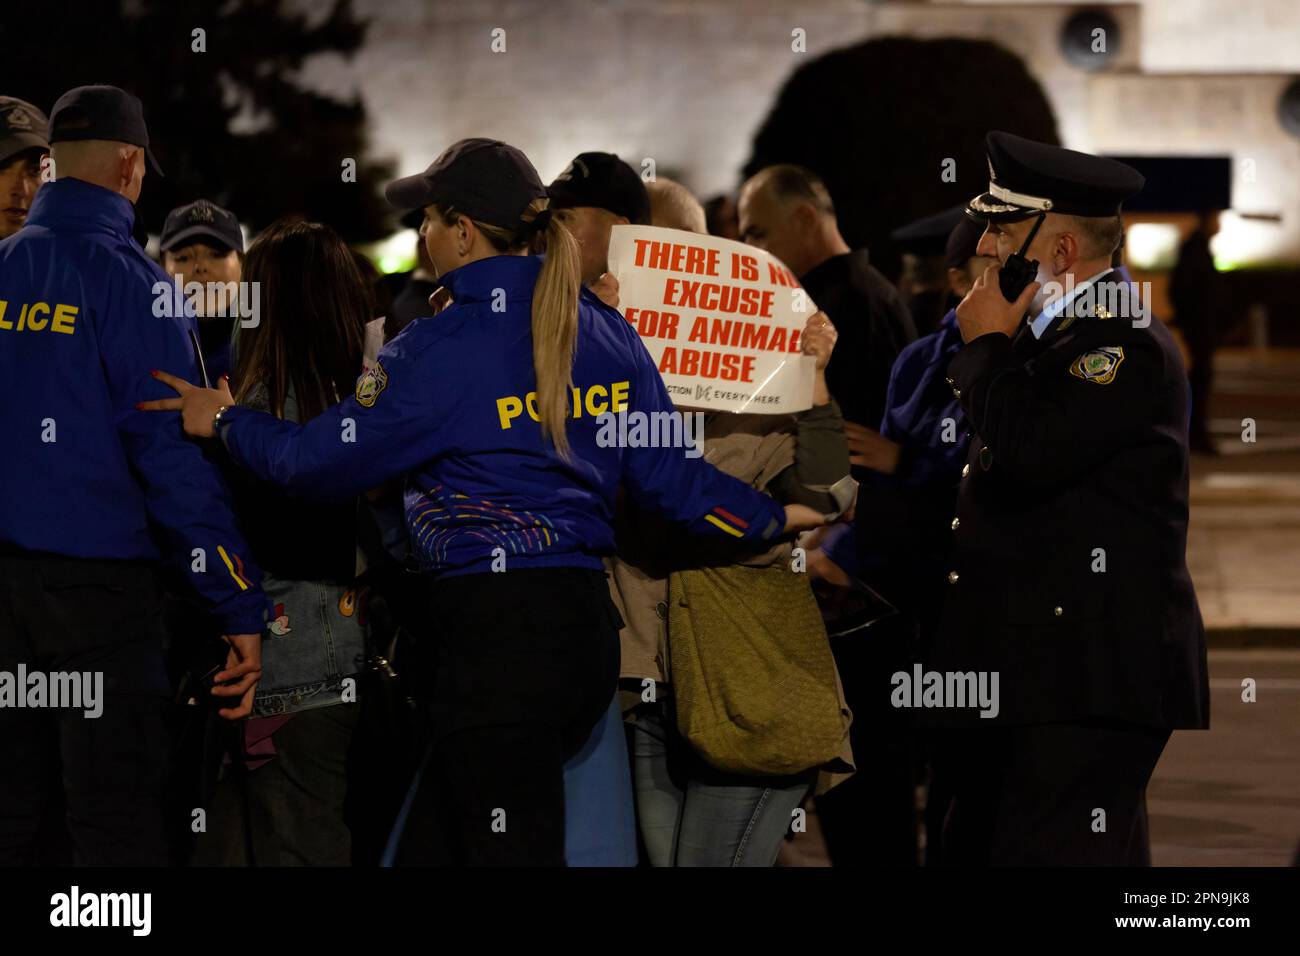 Protesta degli attivisti vegani contro gli abusi sugli animali e il consumo di carne durante i festeggiamenti pasquali, mentre i poliziotti in uniforme blu li spingono indietro. Foto Stock